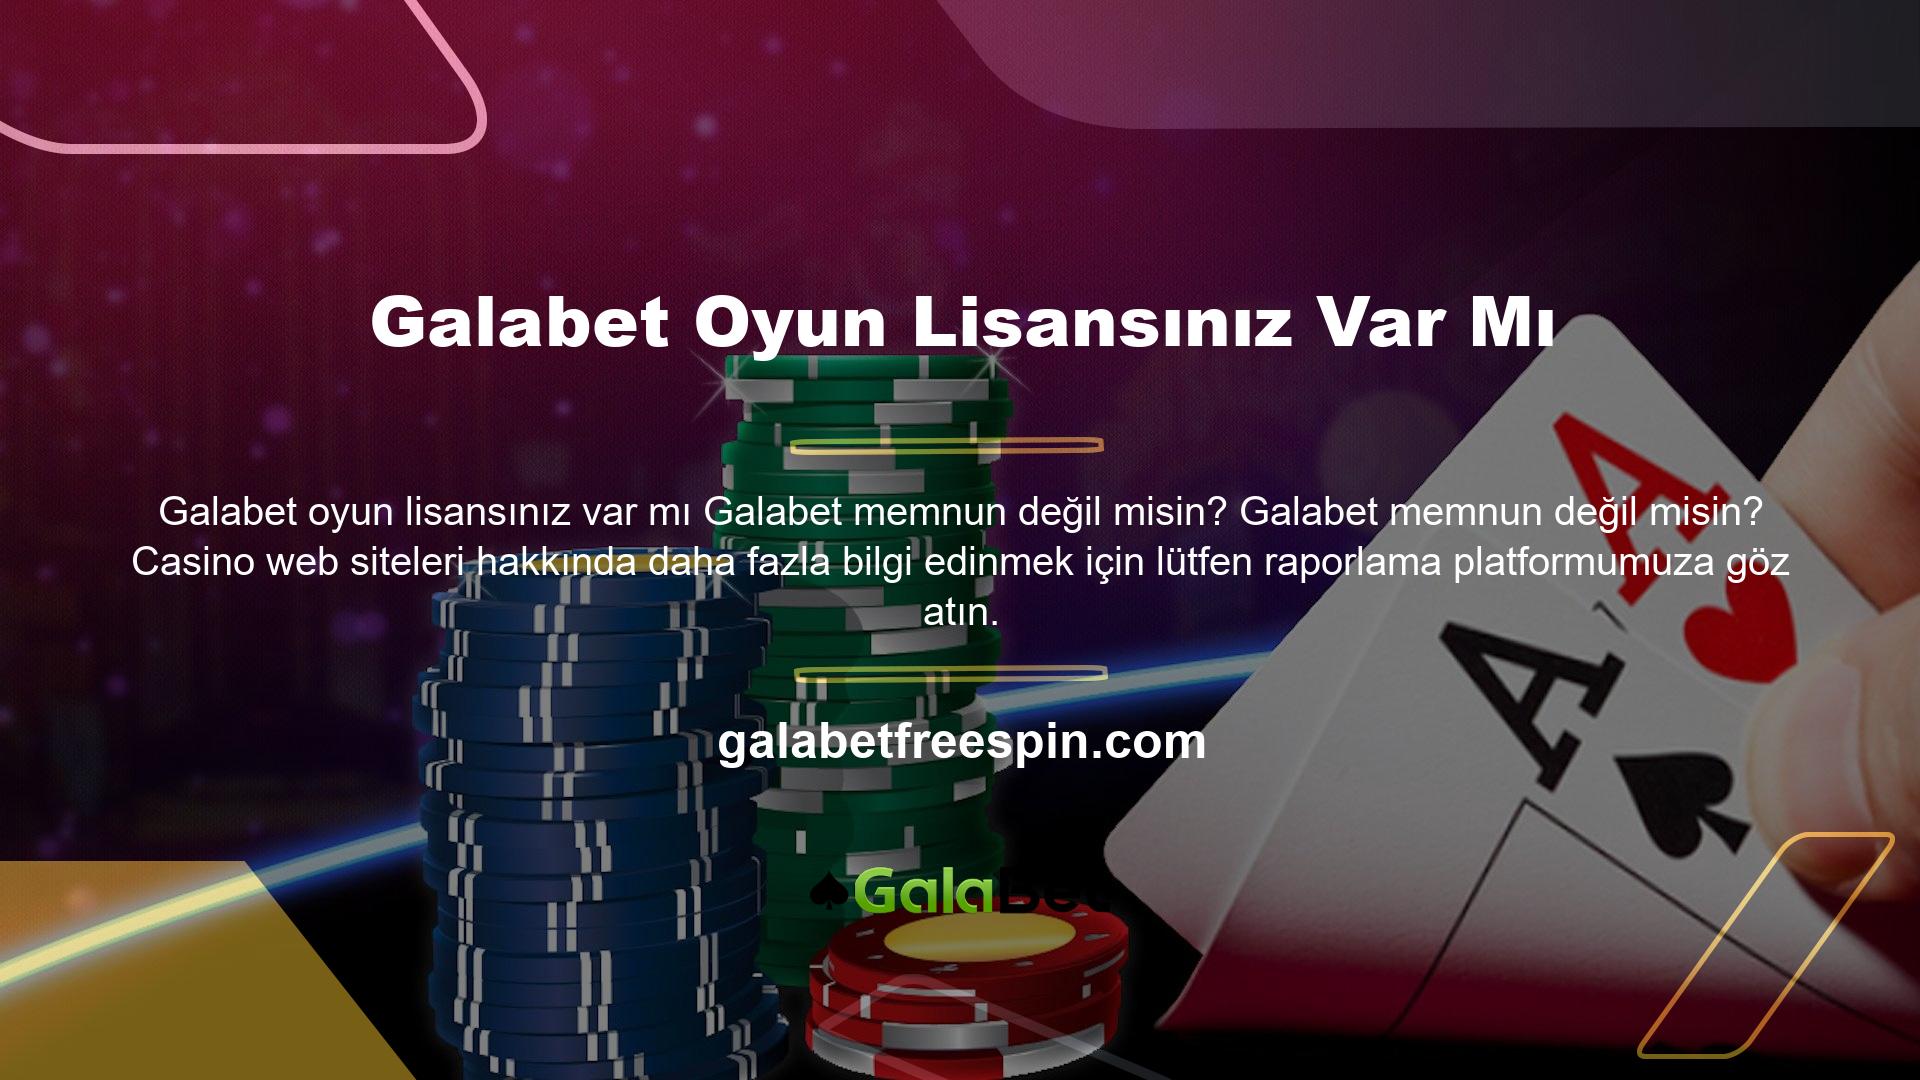 Galabet web sitesi casino tutkunlarının casino hakkındaki olumlu veya olumsuz görüşlerini paylaşmalarına olanak tanır